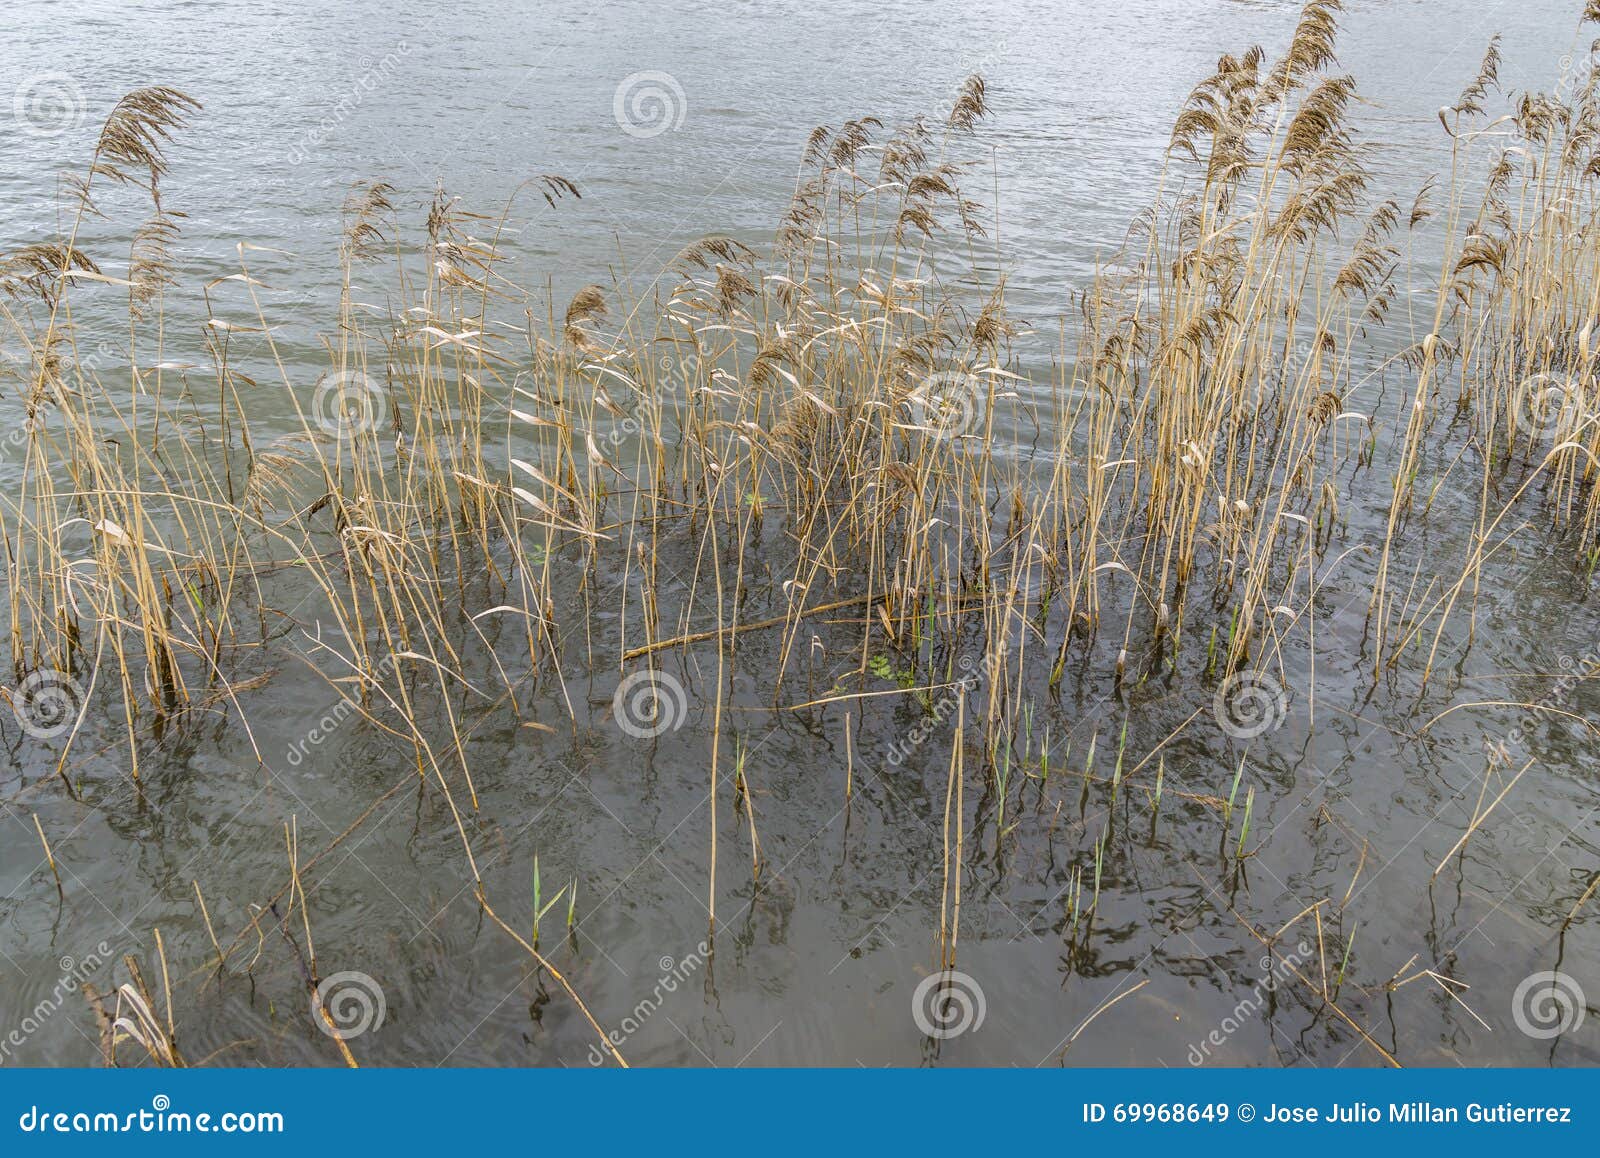 river reeds in spring